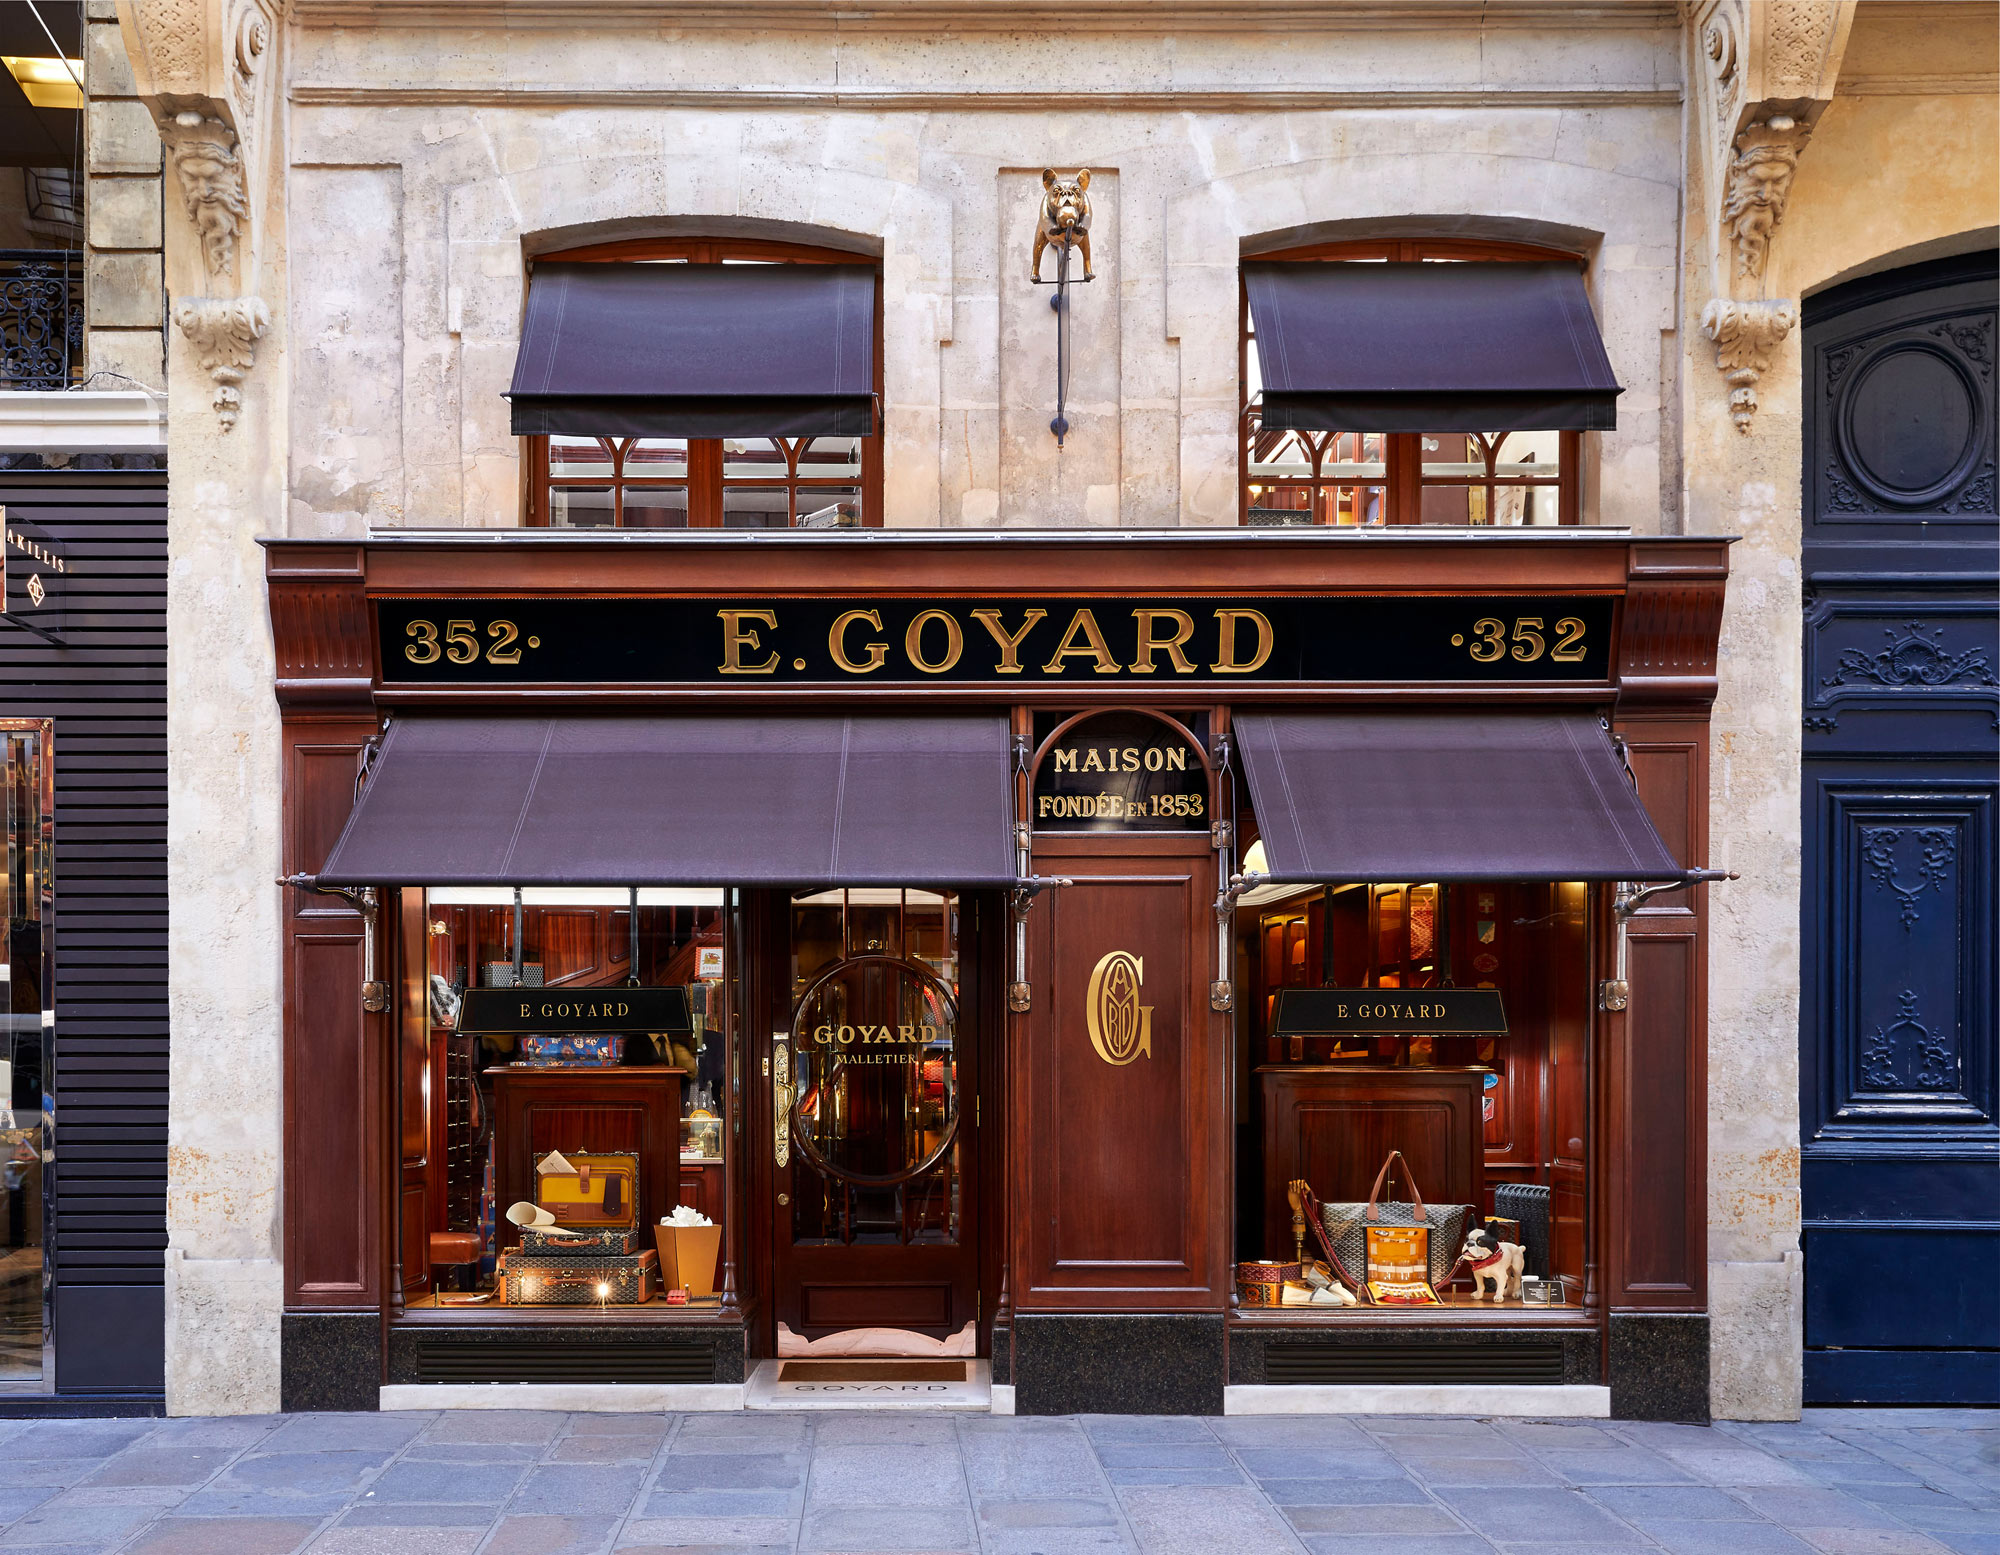 Maison Goyard, Paris  Goyard, Biarritz, Jewelry store design